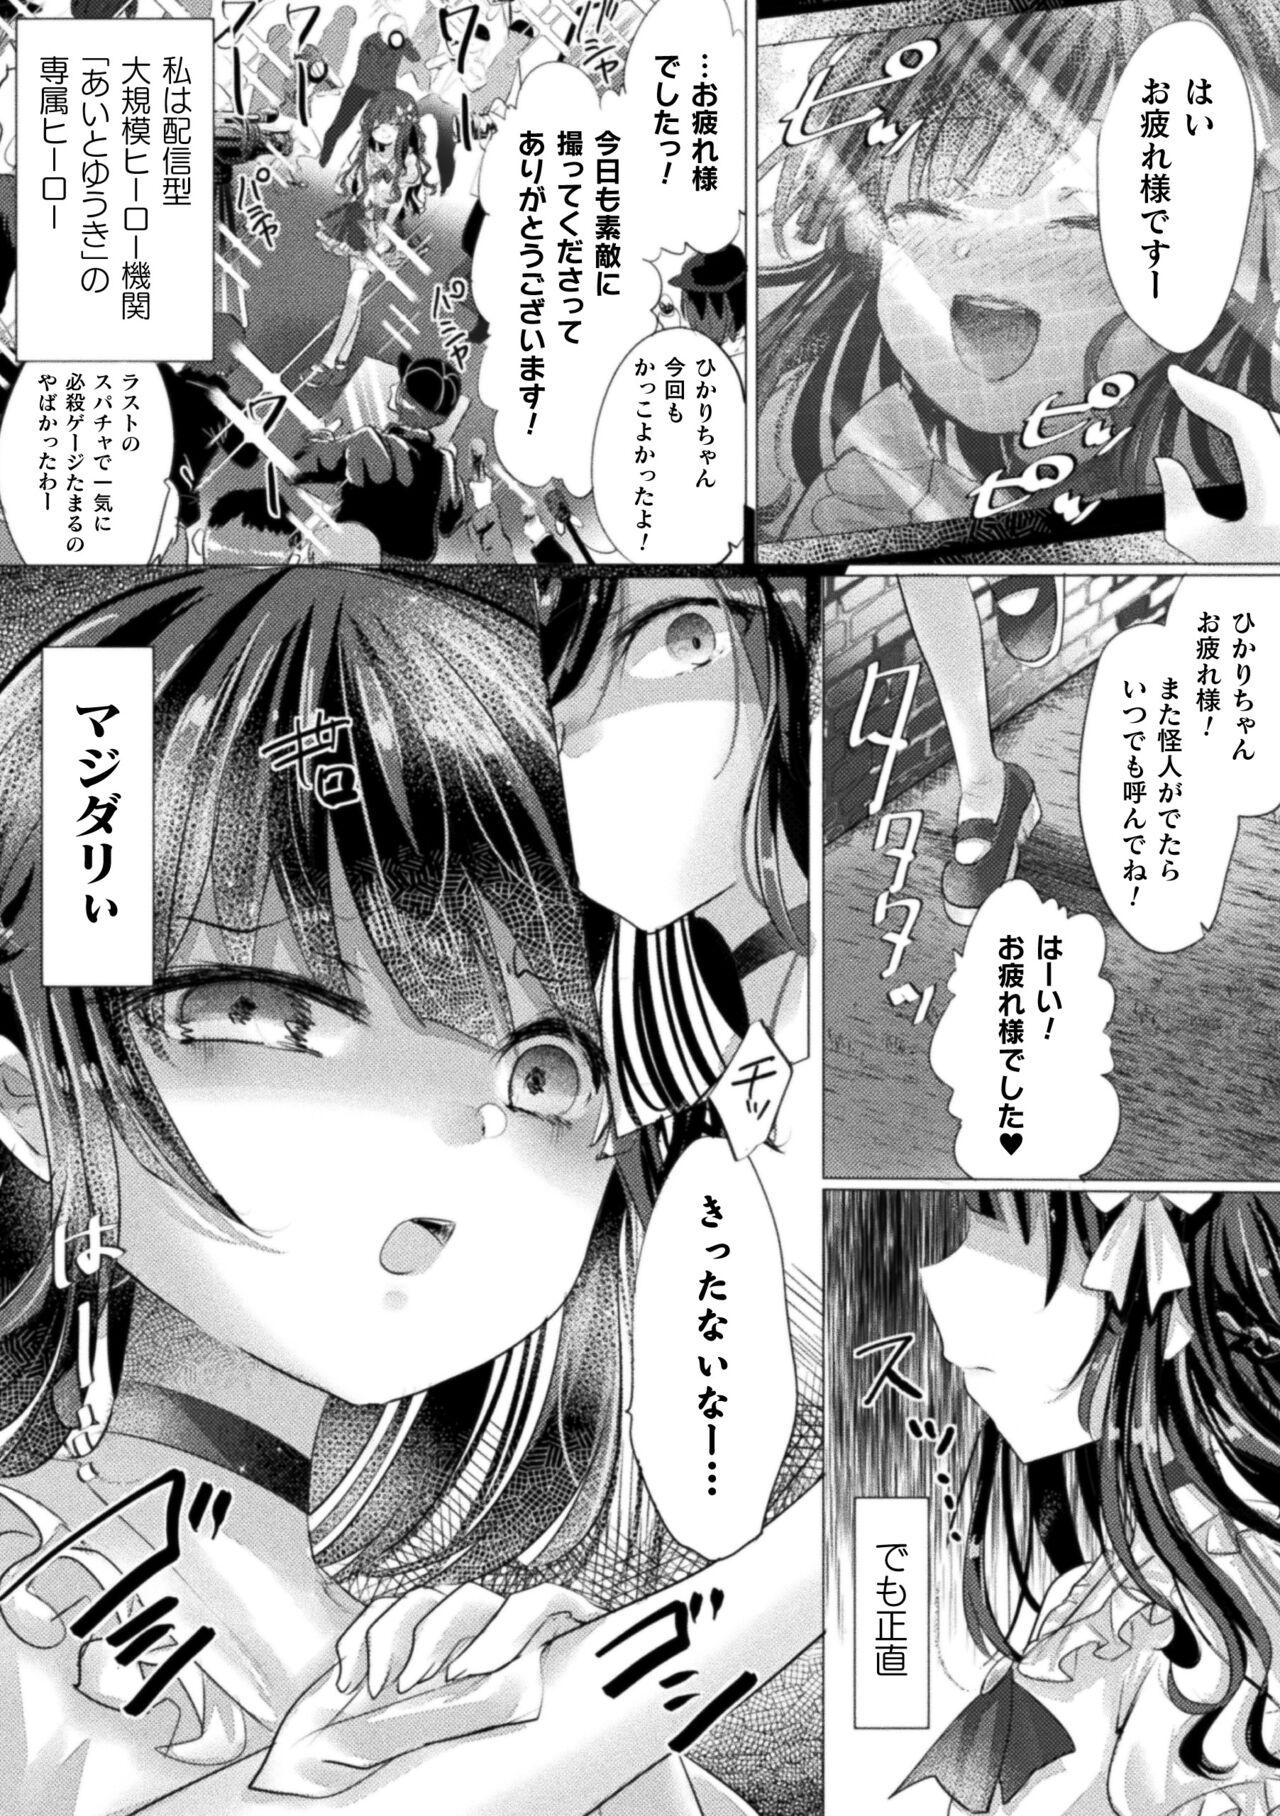 2D Comic Magazine Mesugaki Henshin Heroine Kikaikan Seisai Hijou no Wakarase Machine de Renzoku Loli Acme Vol. 3 45